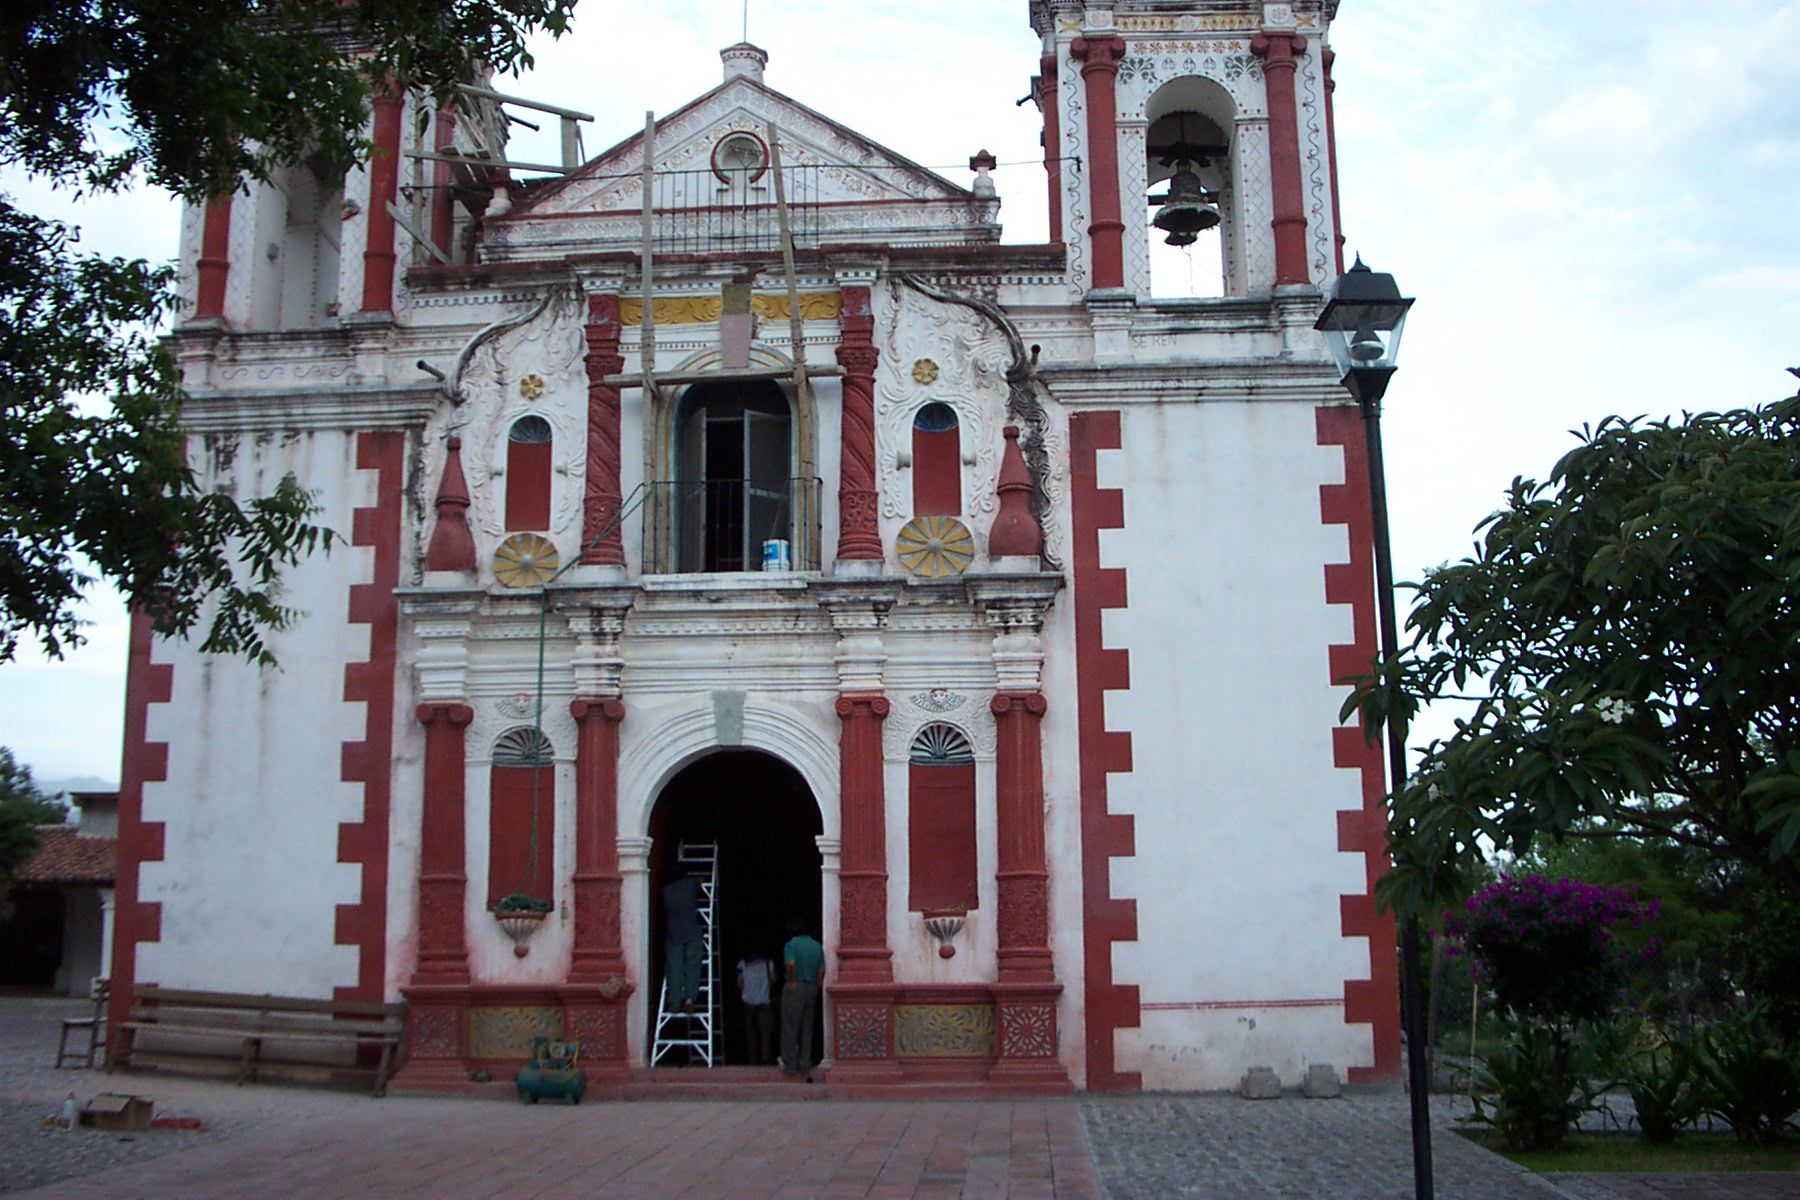 Santa Ana del Valle